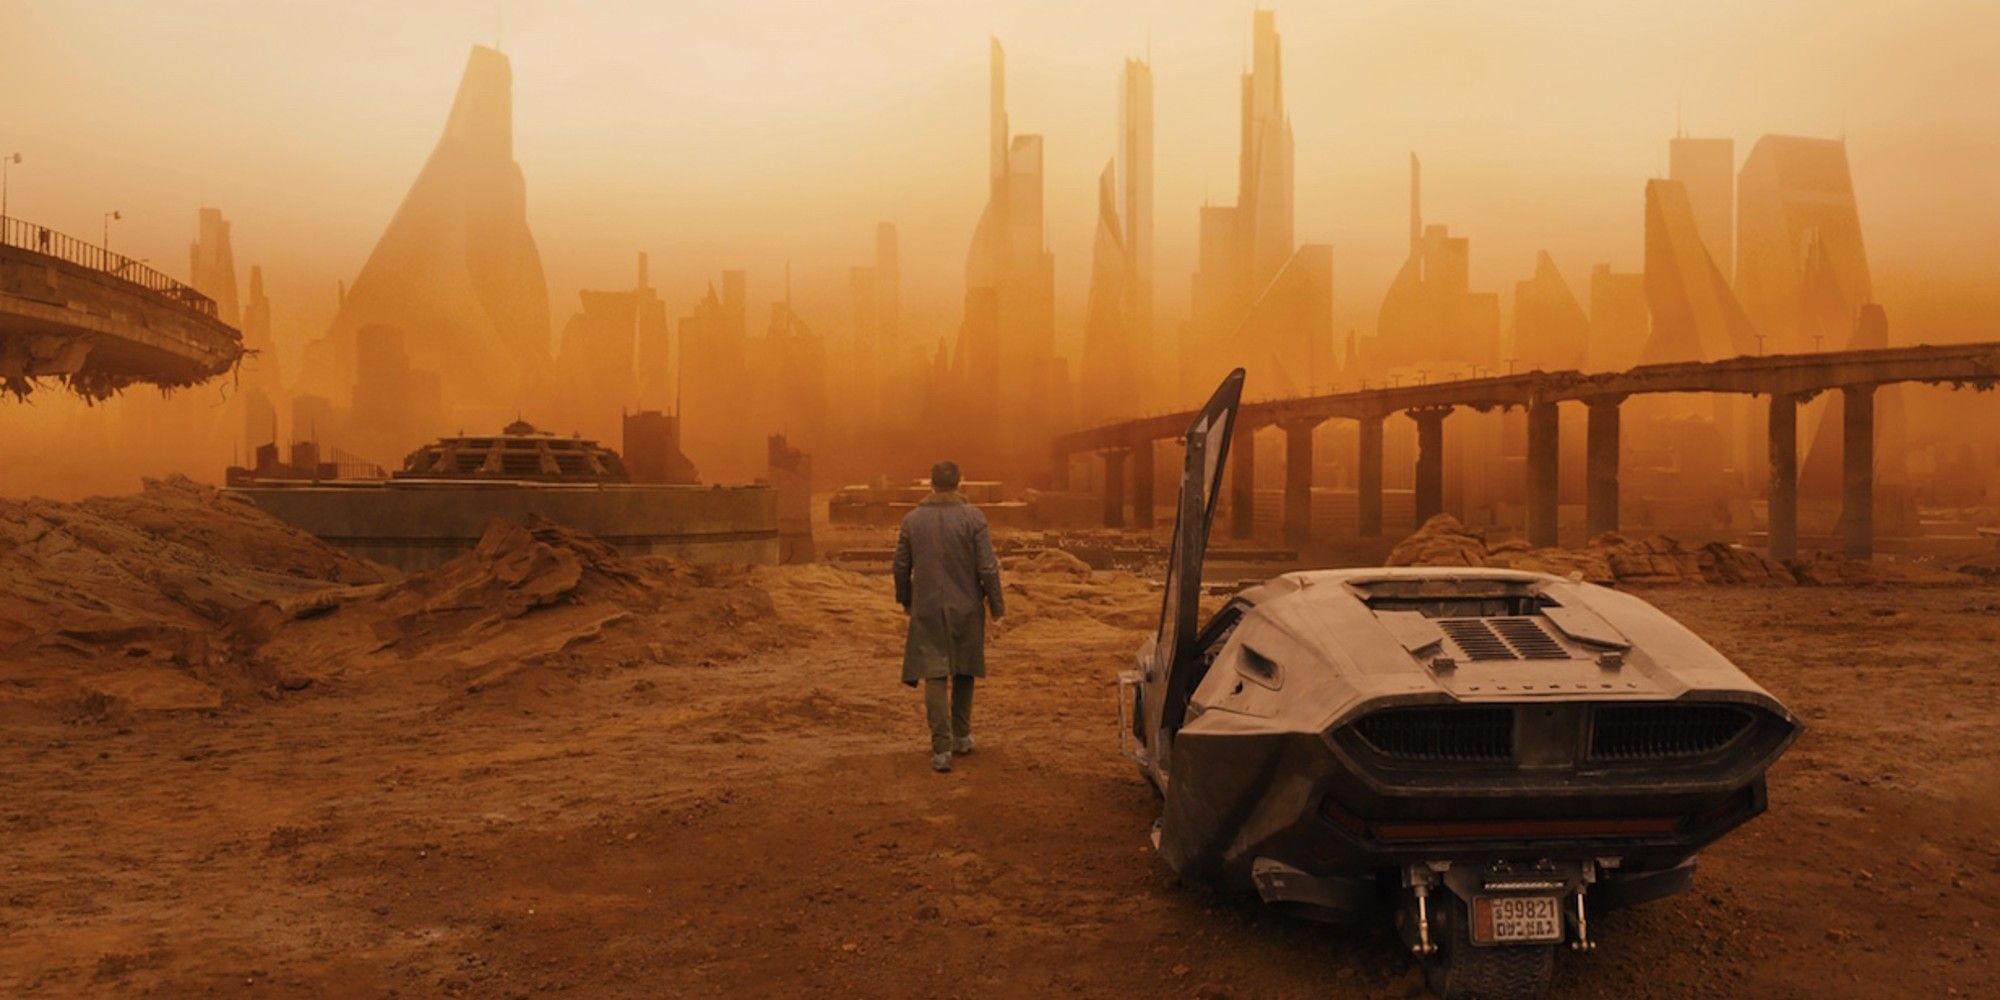 The set design of Blade Runner 2049